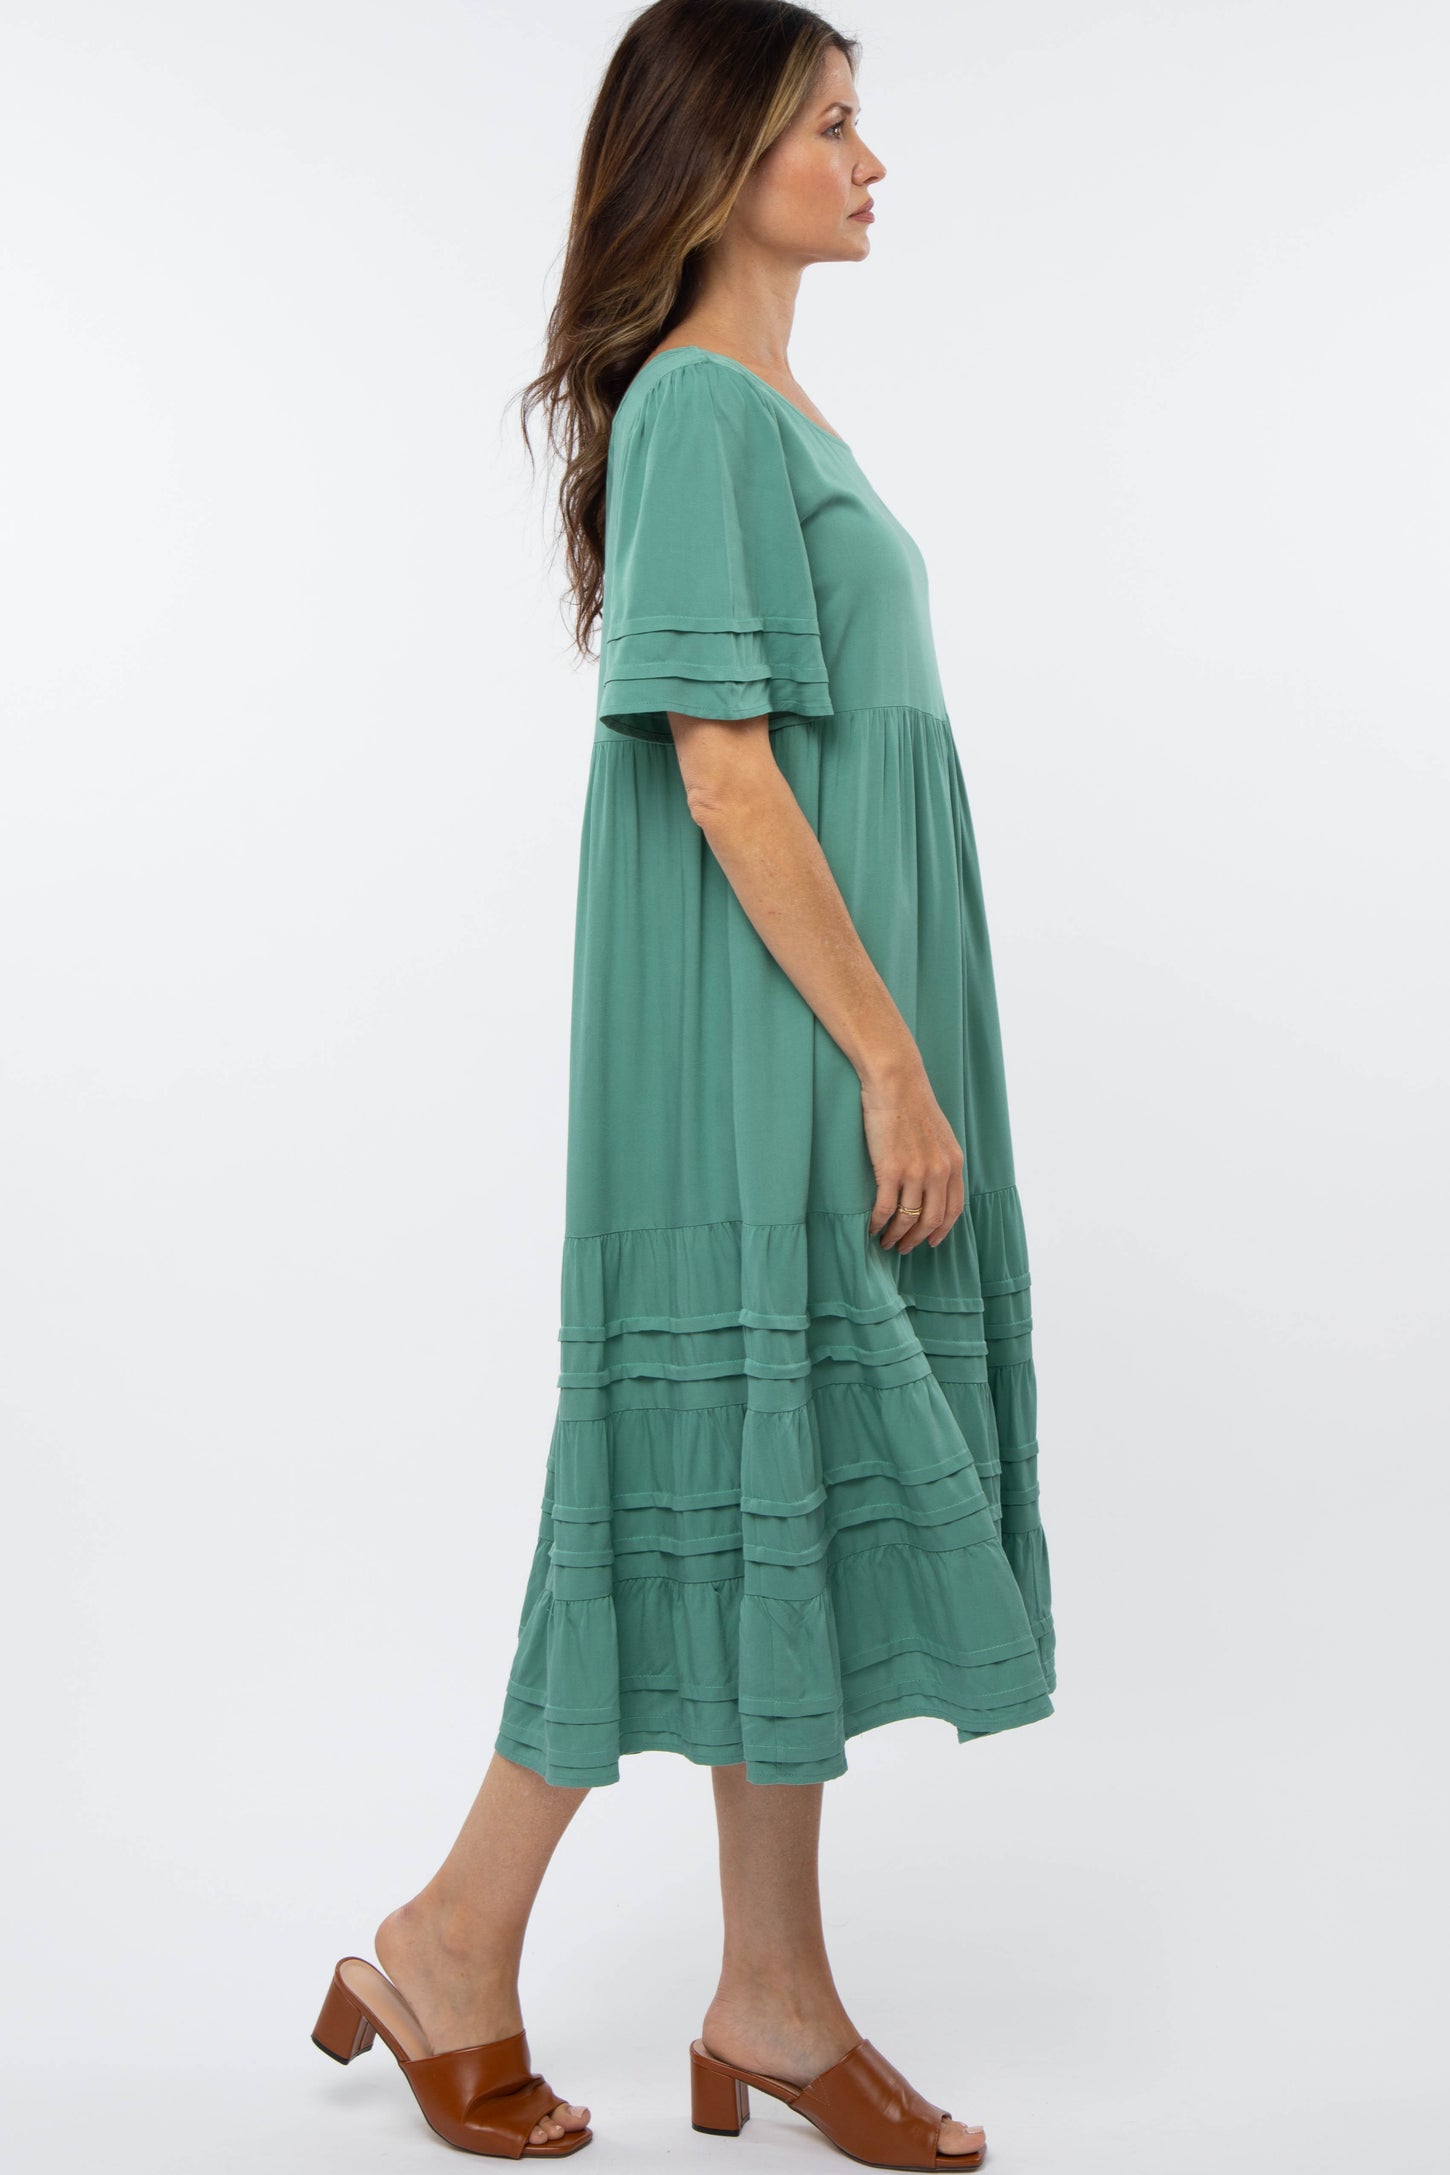 Green Tiered Pintuck Midi Dress